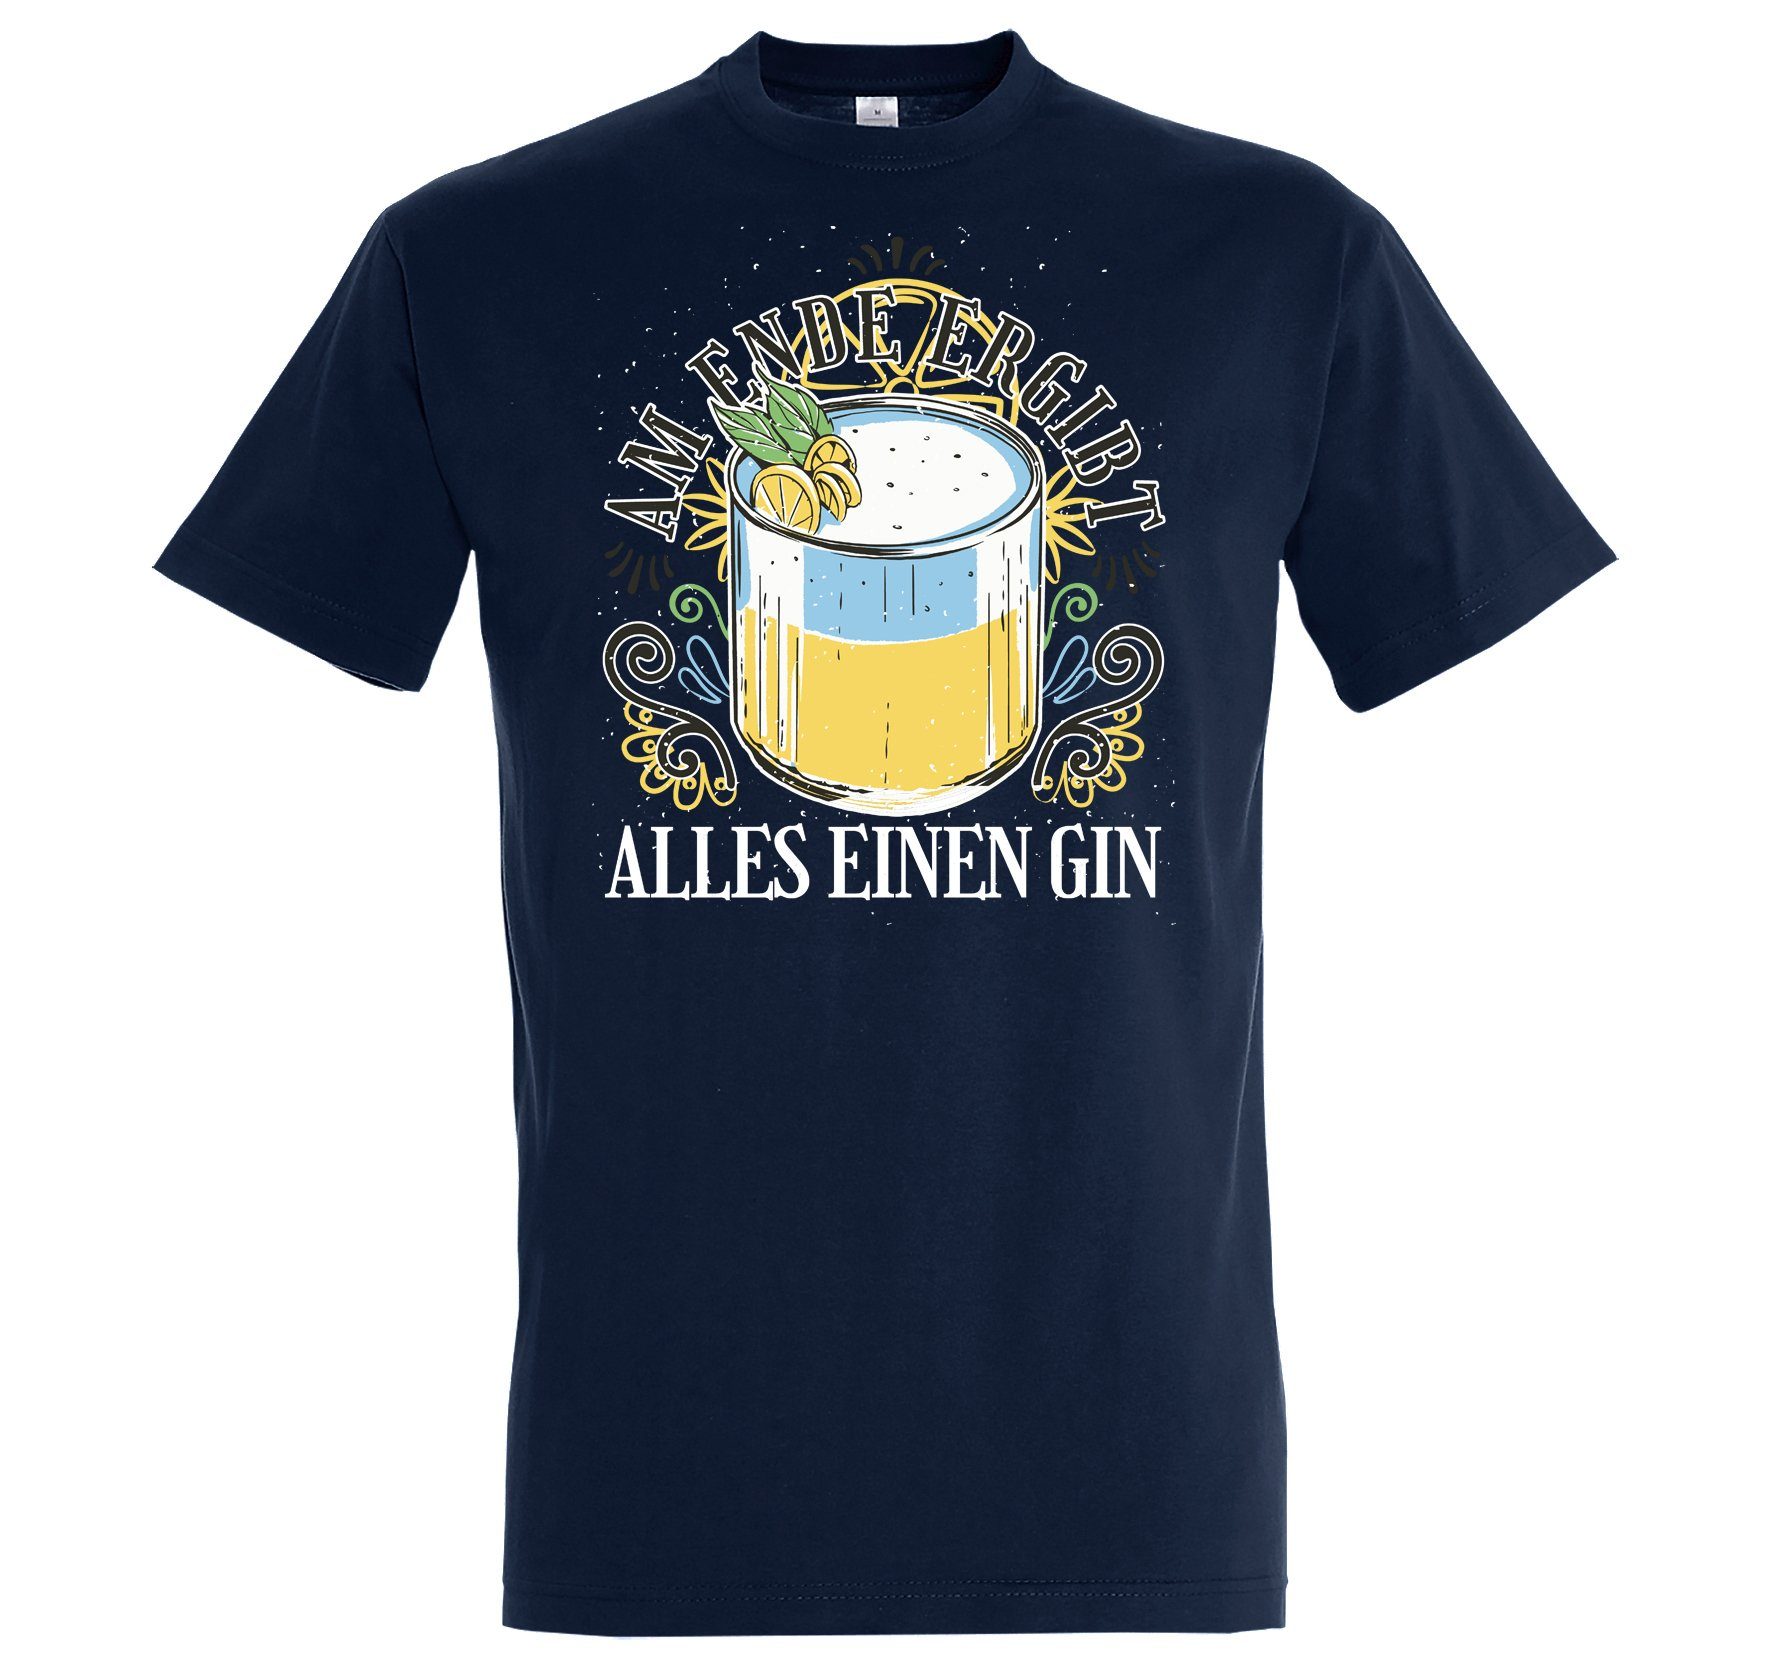 Youth Designz T-Shirt Am Ende ergibt alles einen Gin Herren Shirt Mit Lustigem Aufdruck Navy